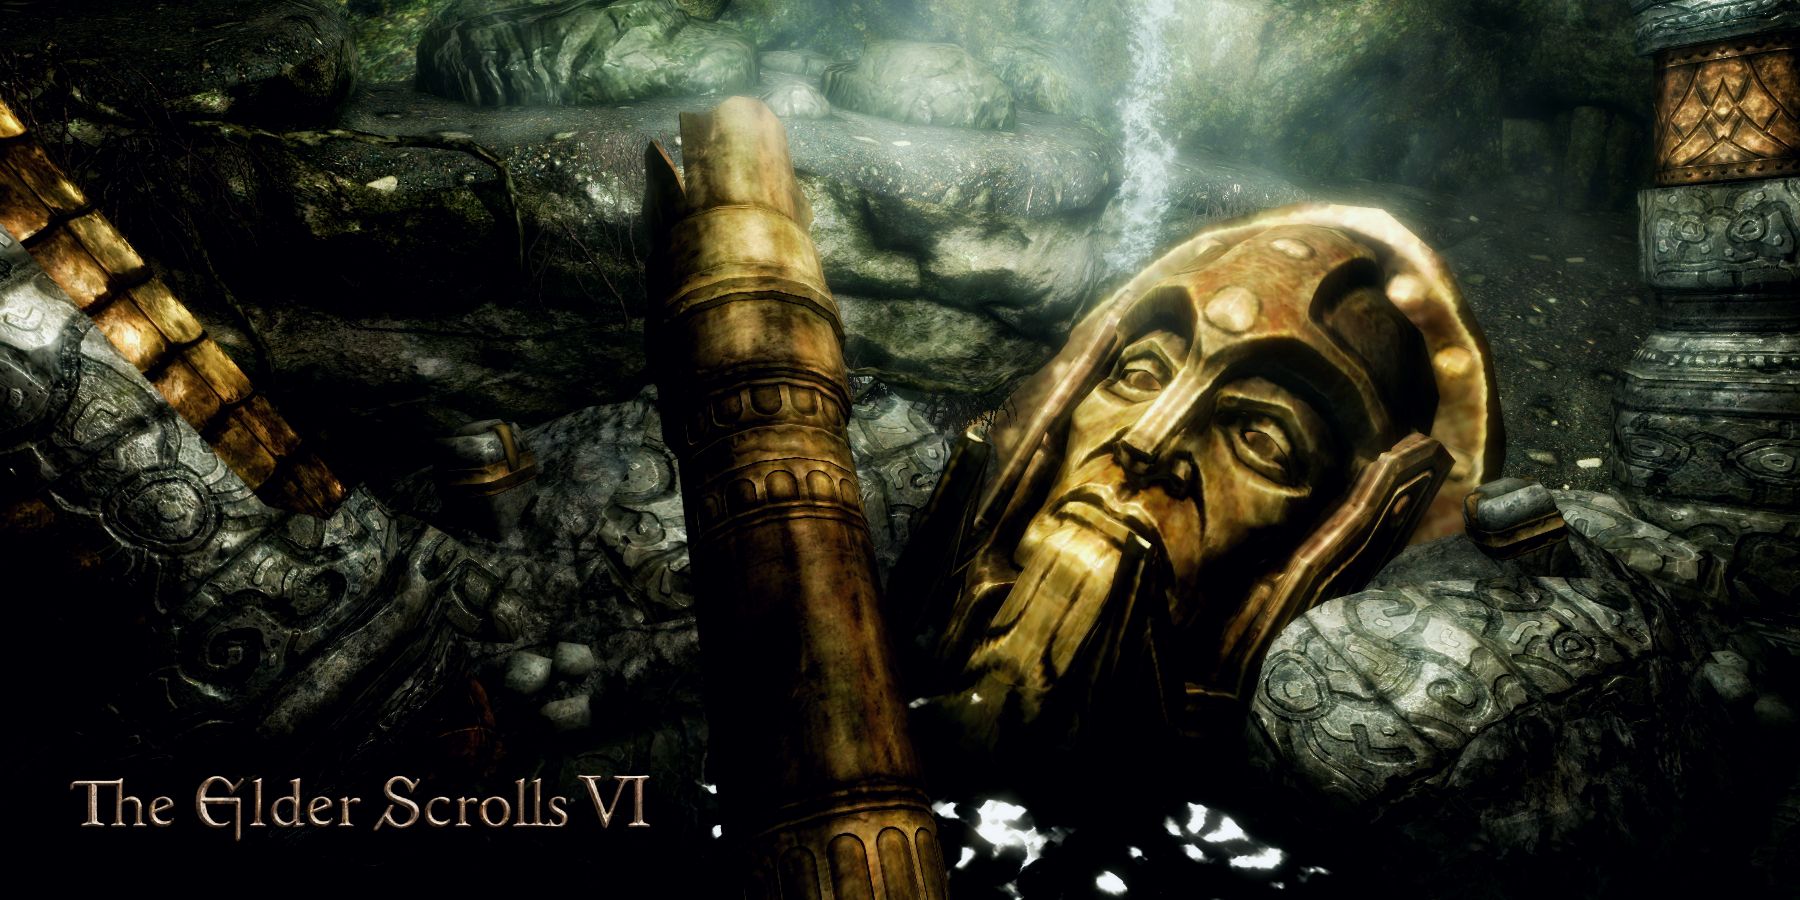 BREAKING - The Elder Scrolls VI Enters Early Development! 